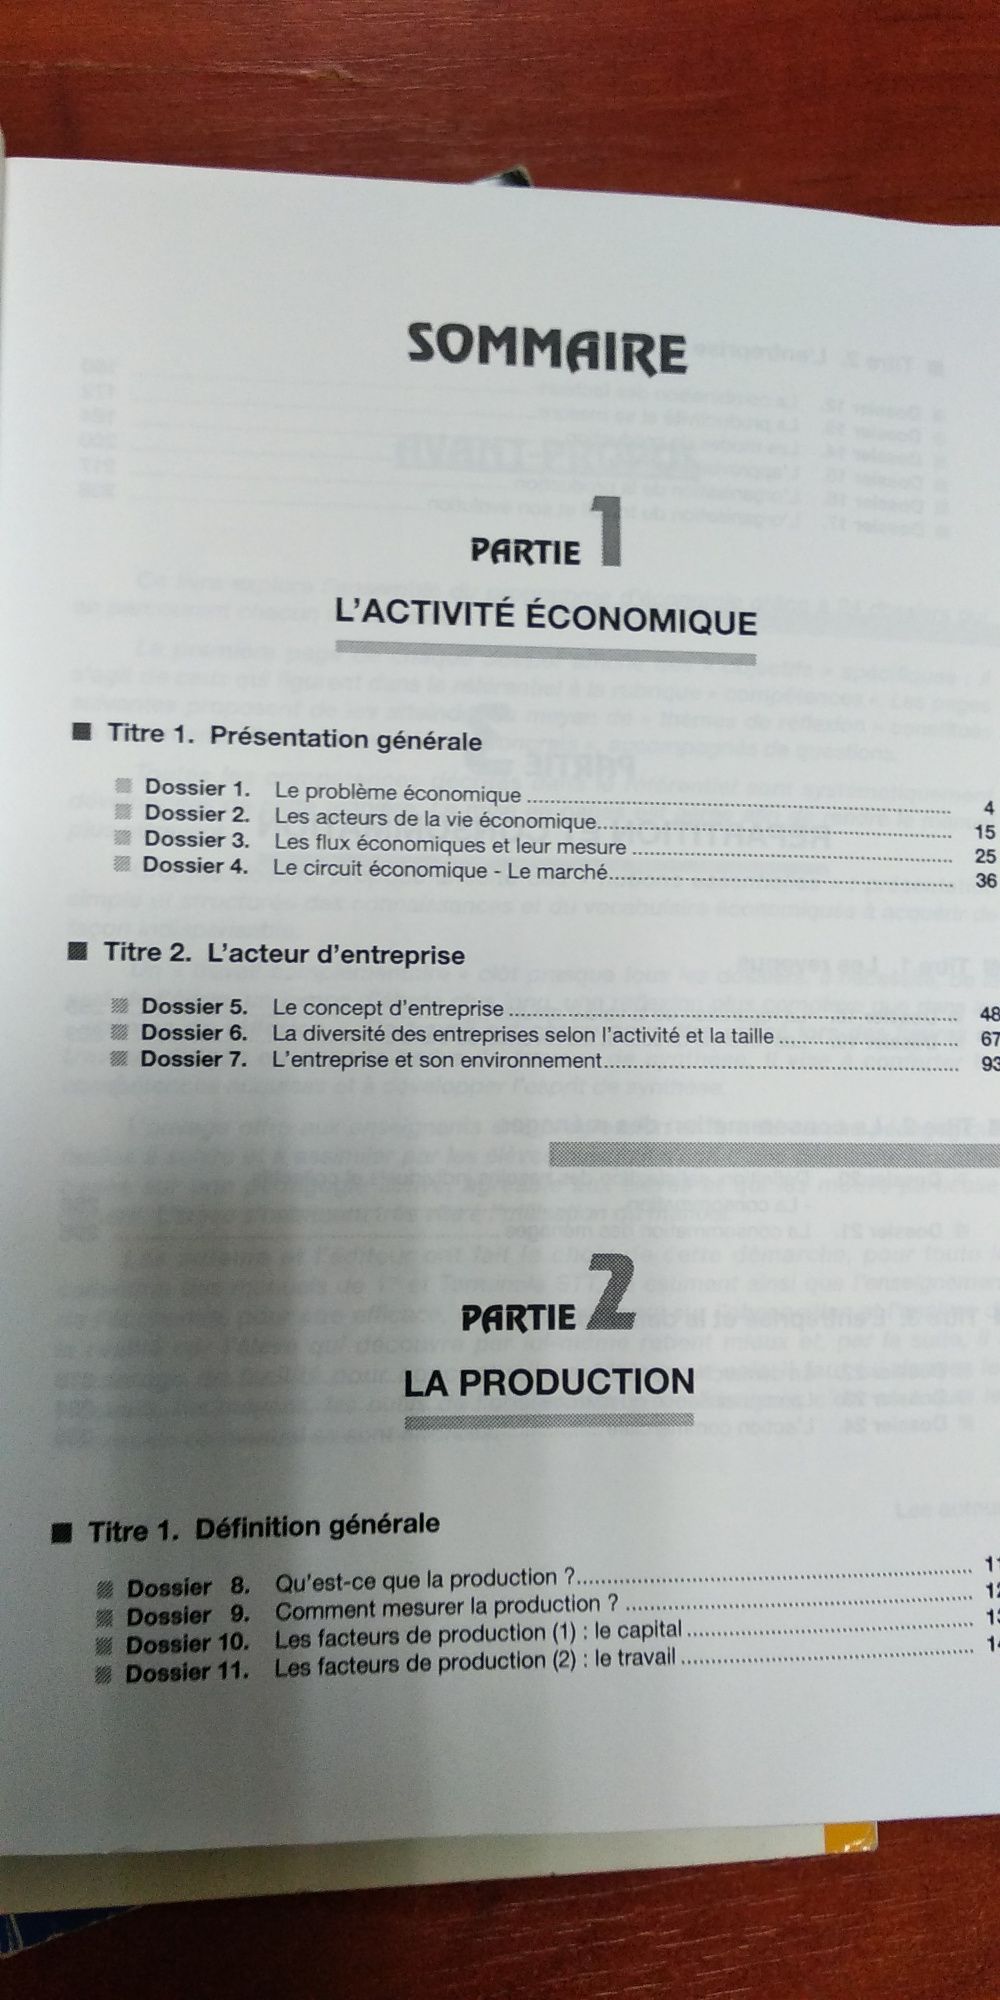 Учебники французского (экономика) для углубленного изучения